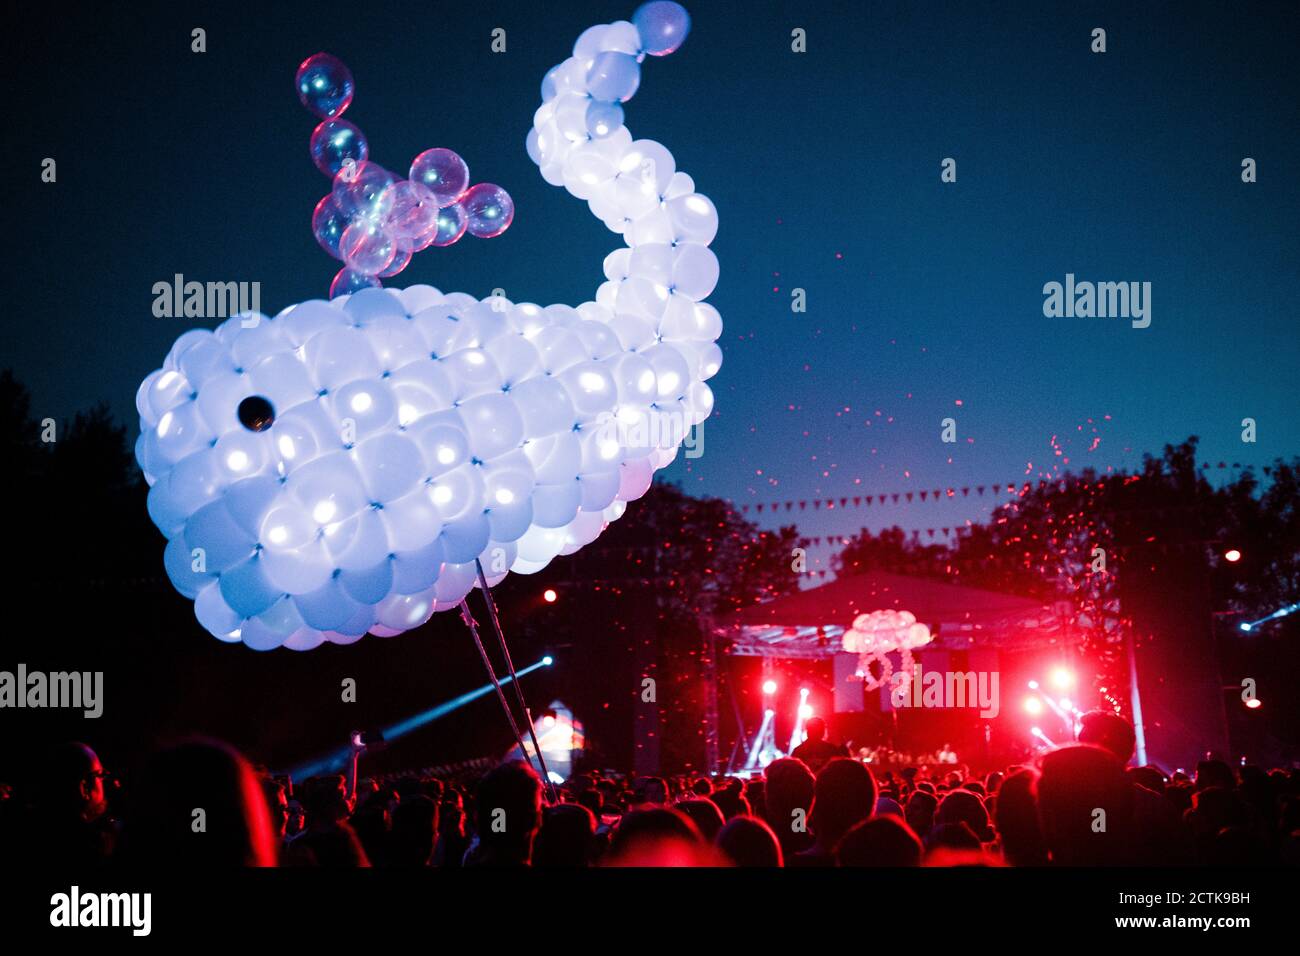 Baleine faite de ballons violets flottant au-dessus de la foule de gens s'amuser pendant le festival de musique de nuit Banque D'Images